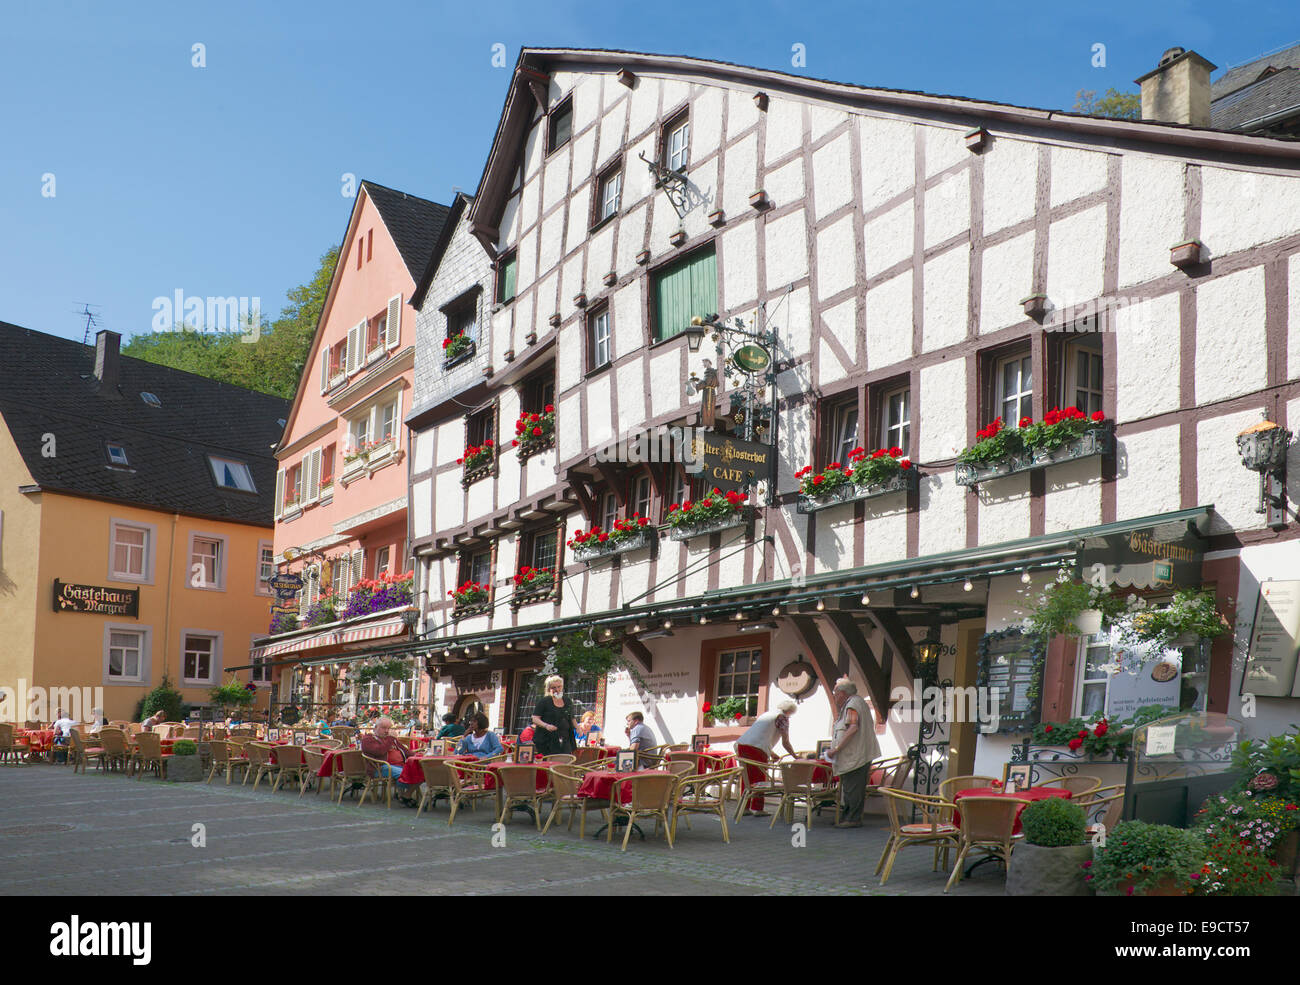 Restaurant en plein air vieille ville de Bernkastel-Kues Allemagne Vallée de la Moselle Banque D'Images